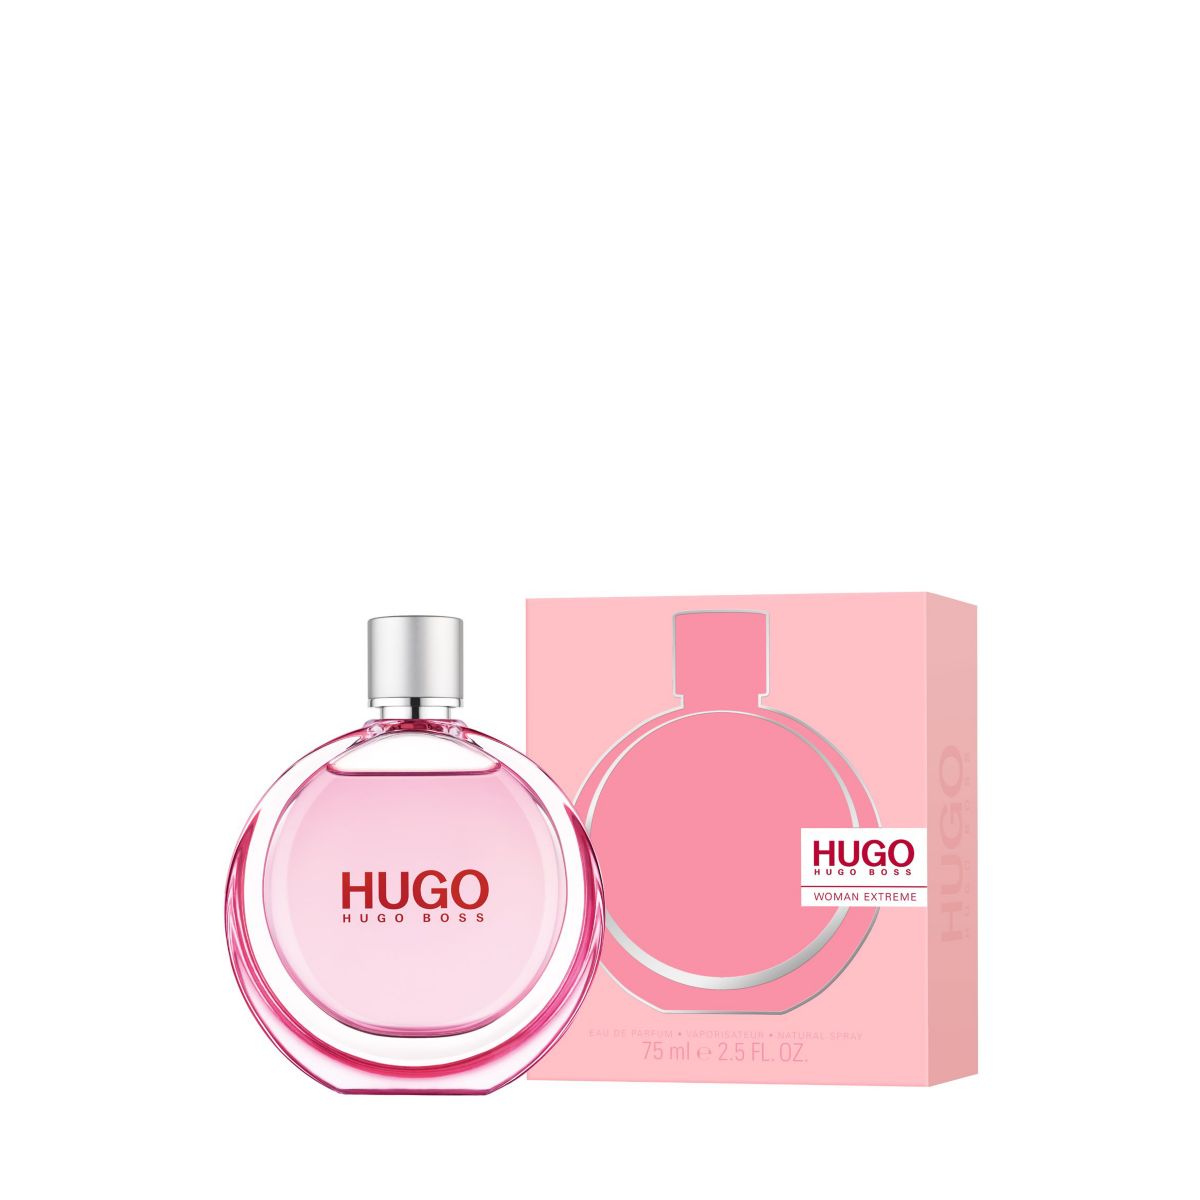 Buy HUGO Woman Extreme Eau de Parfum (75 ml) from Beautiful